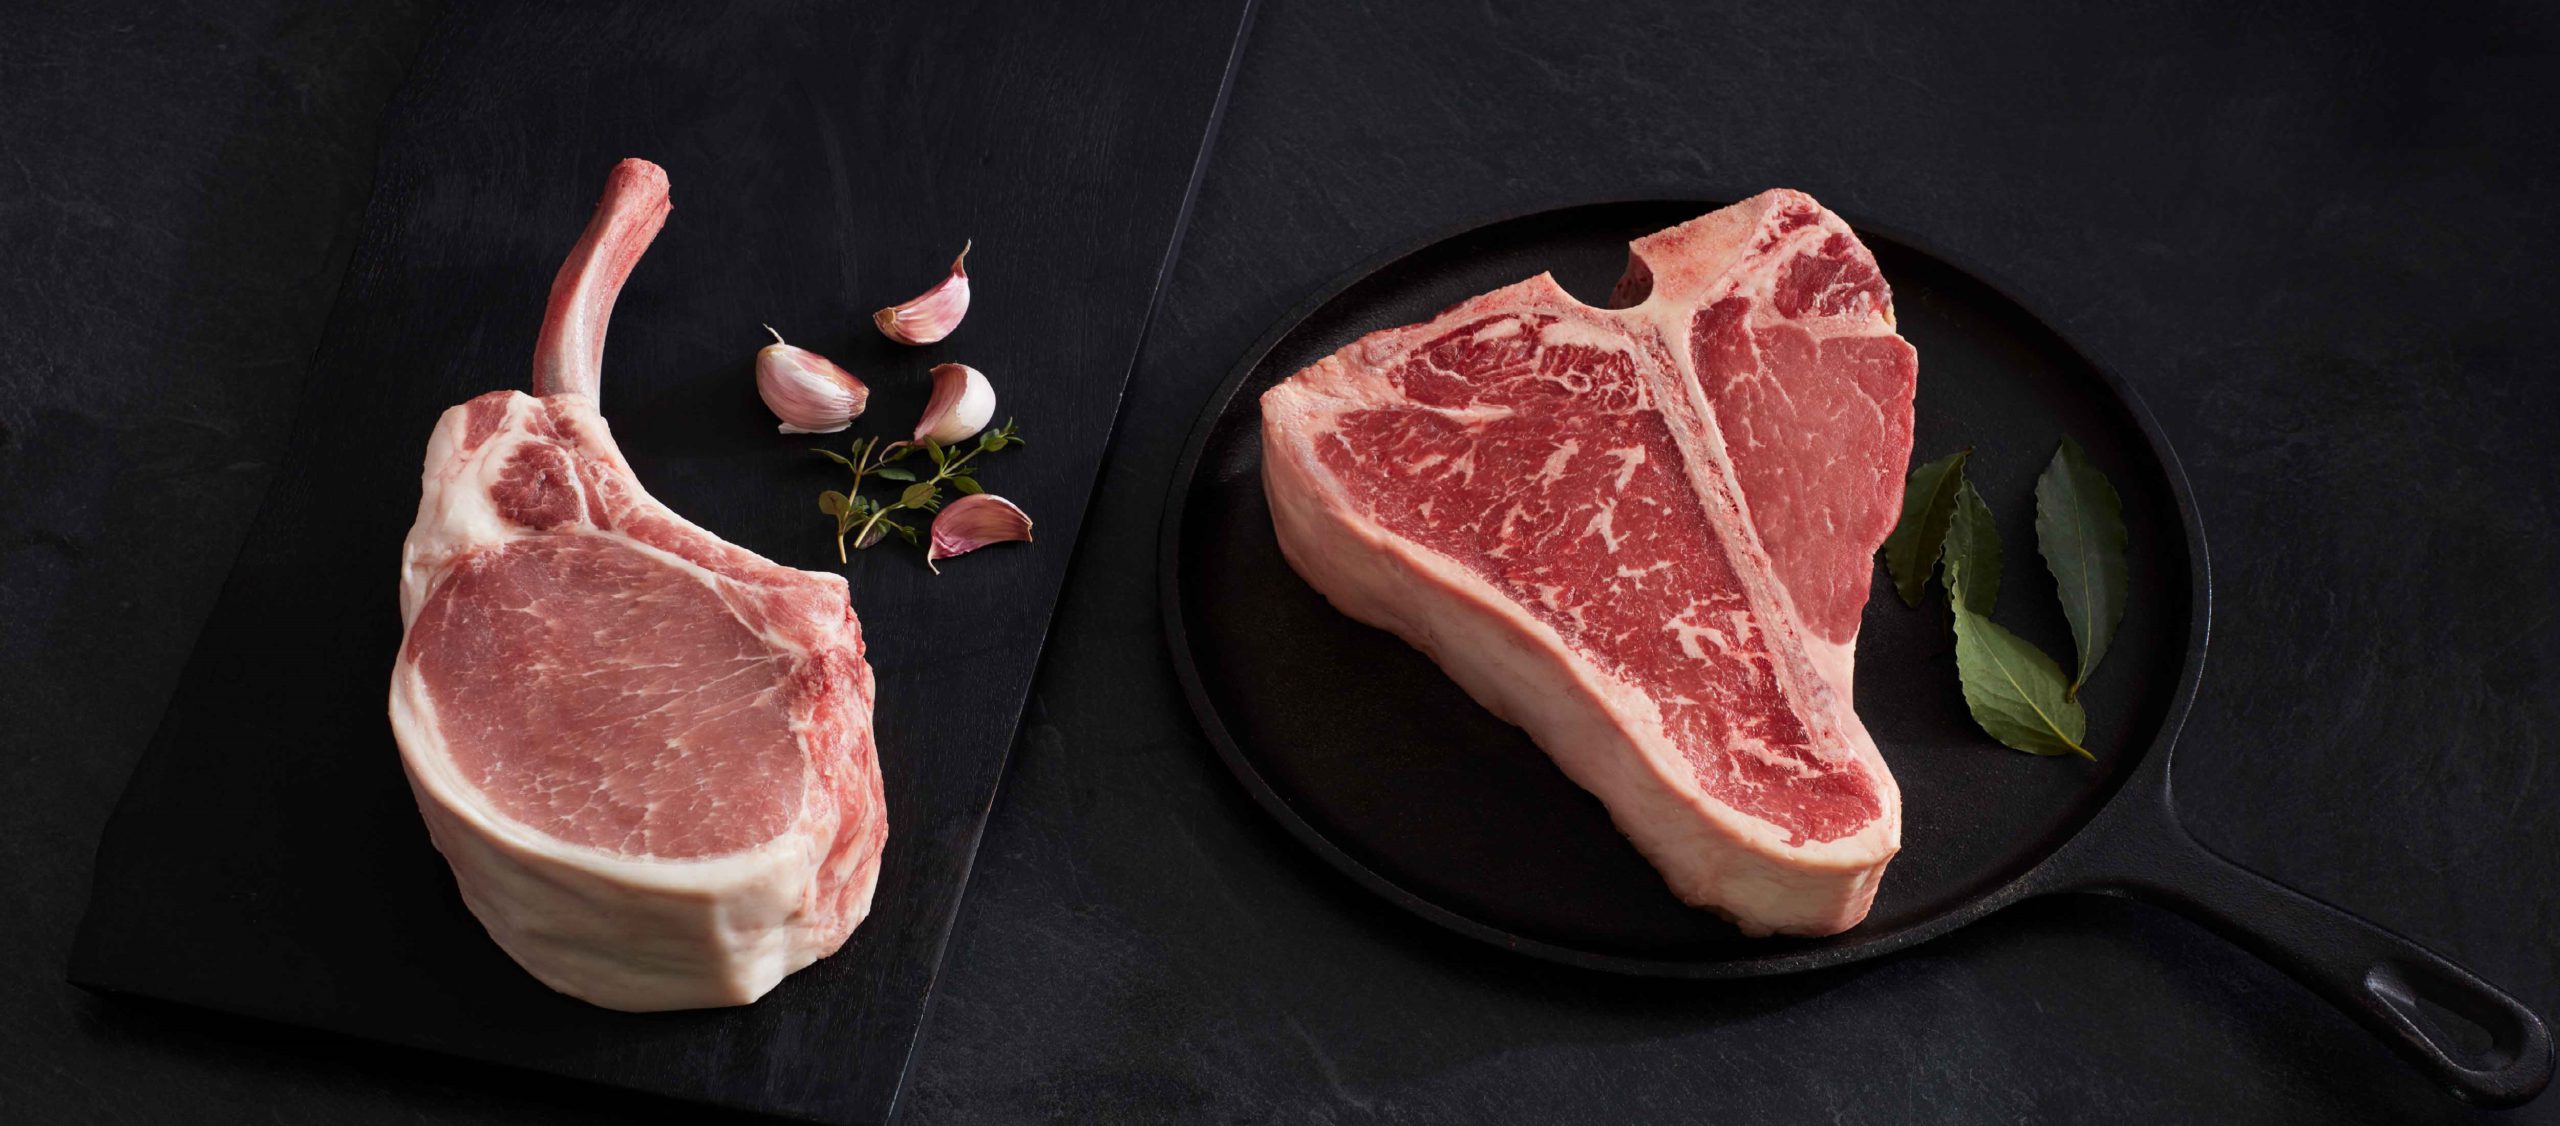 raw bone-in pork chop and t-bone steak stylized on slate background